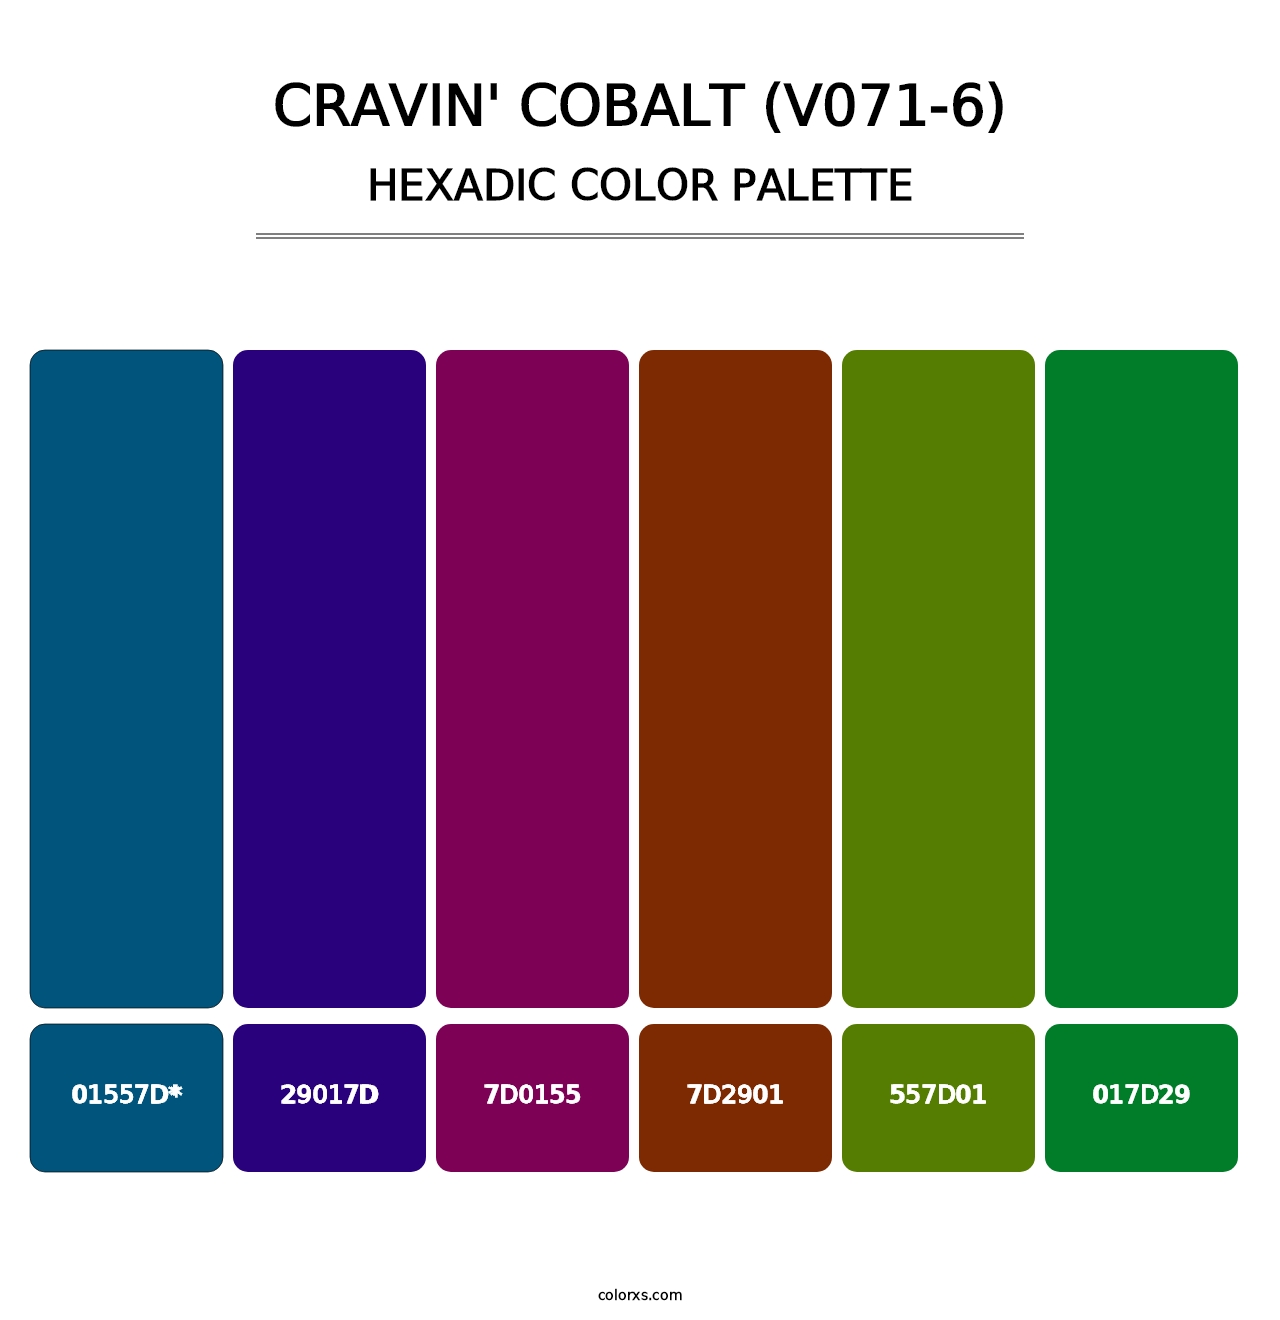 Cravin' Cobalt (V071-6) - Hexadic Color Palette